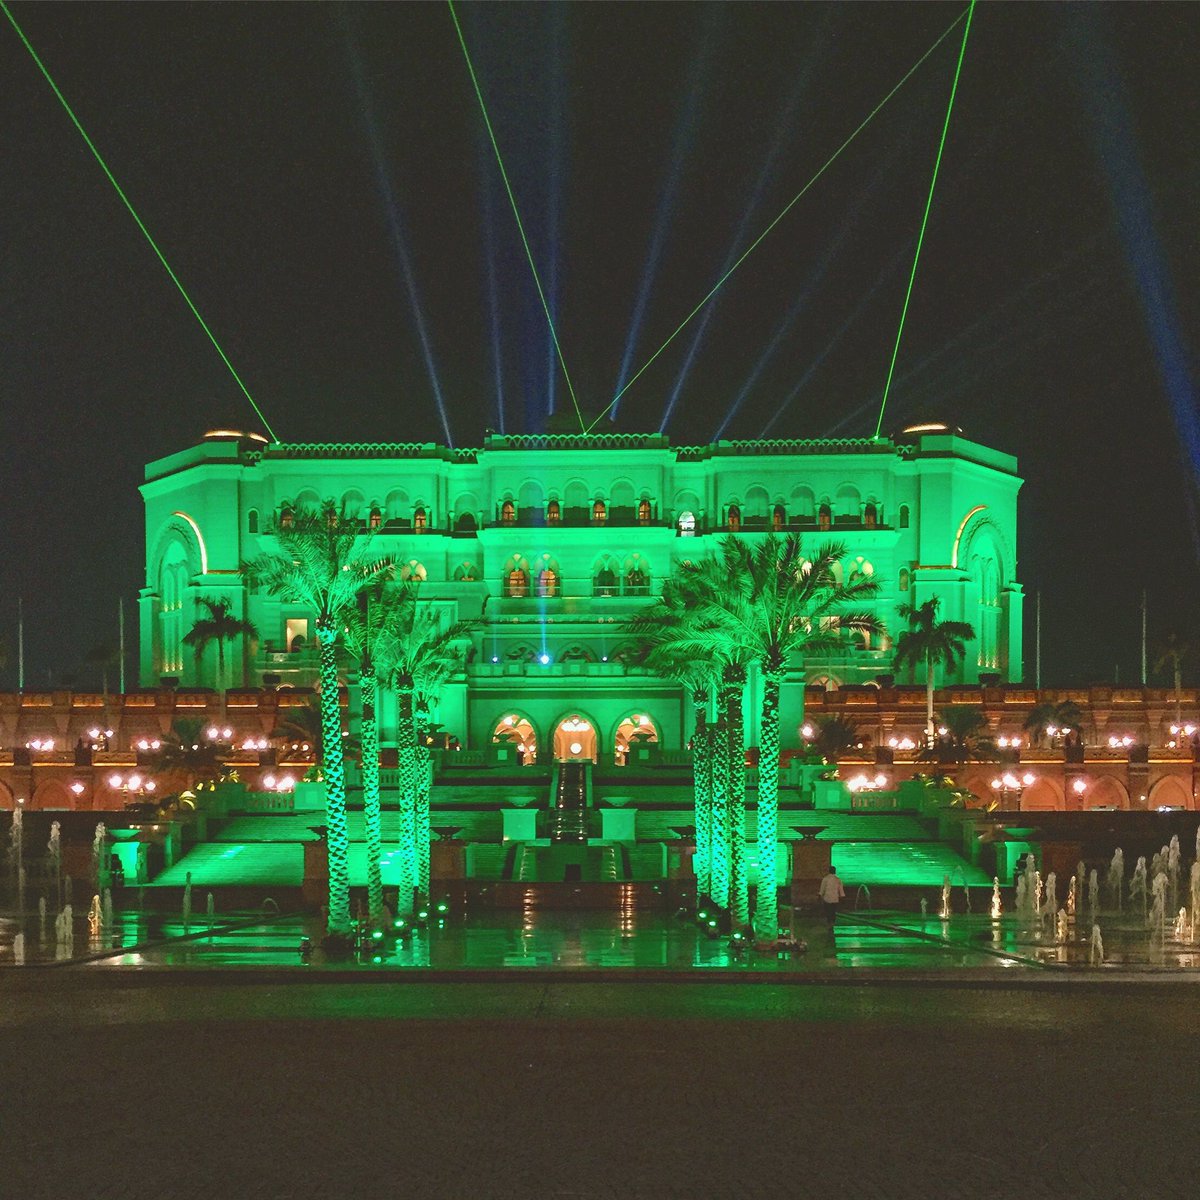 بالصورة.. قصر الإمارات يتوشح باللون الأخضر ترحيباً بالملك سلمان